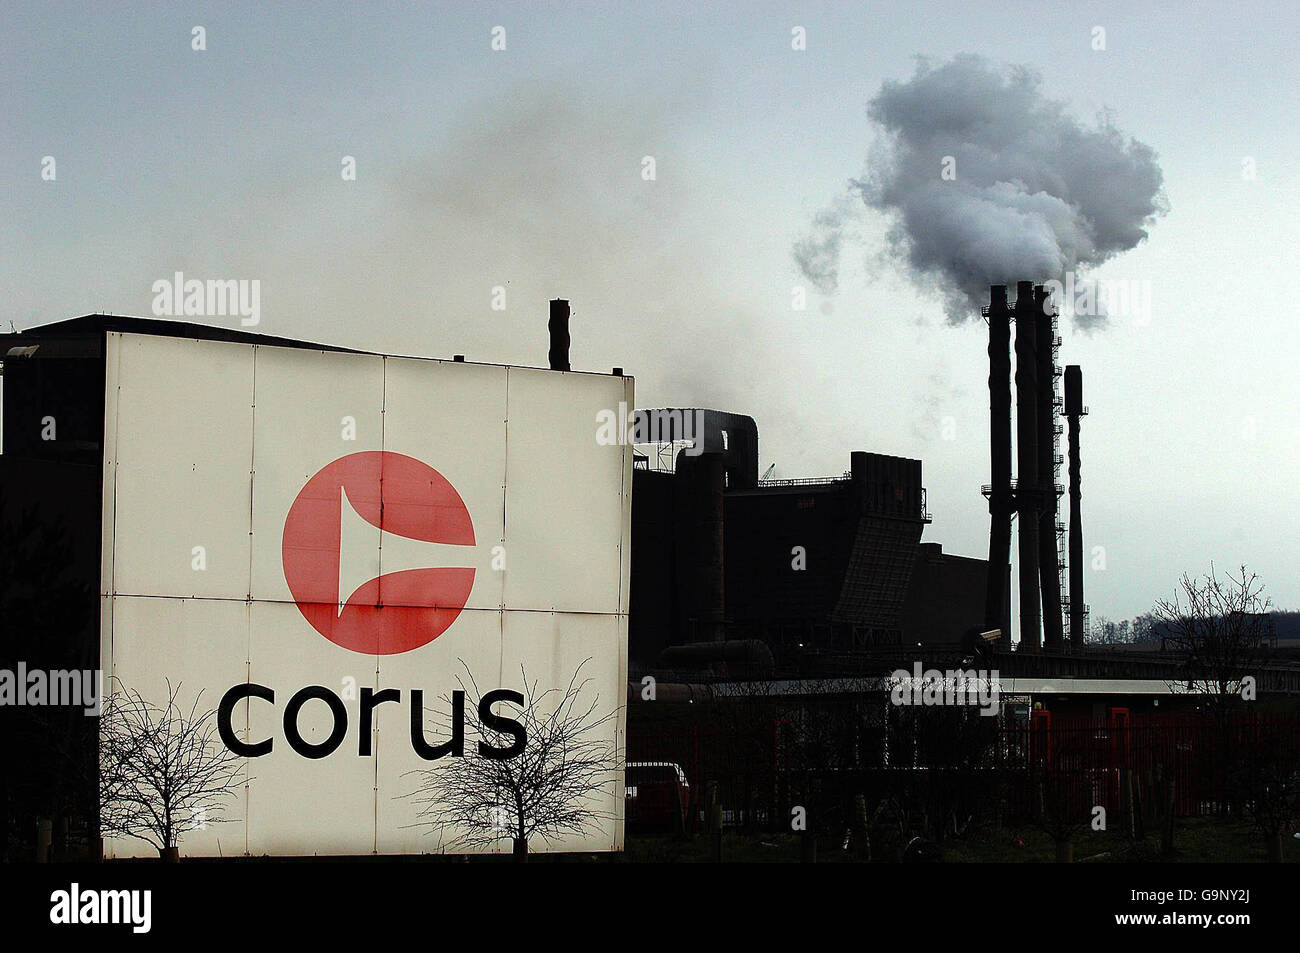 Das Corus Steelworks in Scunthorpe, am Tag der Übernahmekommission bekannt gegeben, dass das indische Unternehmen Tata Steel die Auktion für das Unternehmen gewonnen hat. Stockfoto